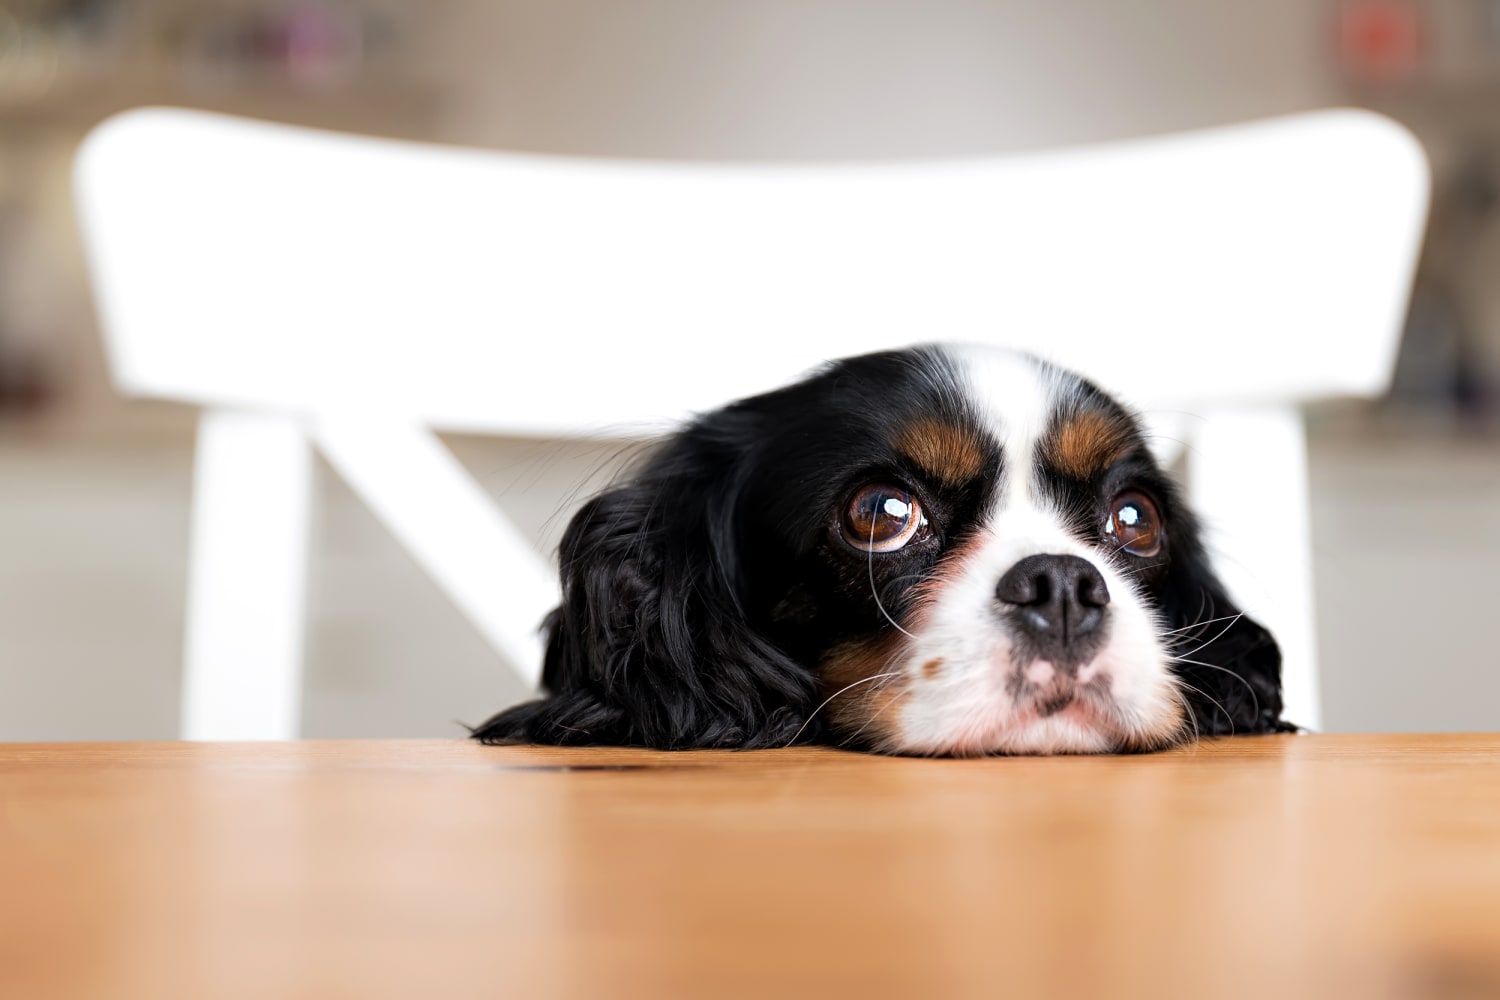 Molesto Arrepentimiento a tiempo Scientists take a peek behind those sad puppy dog eyes